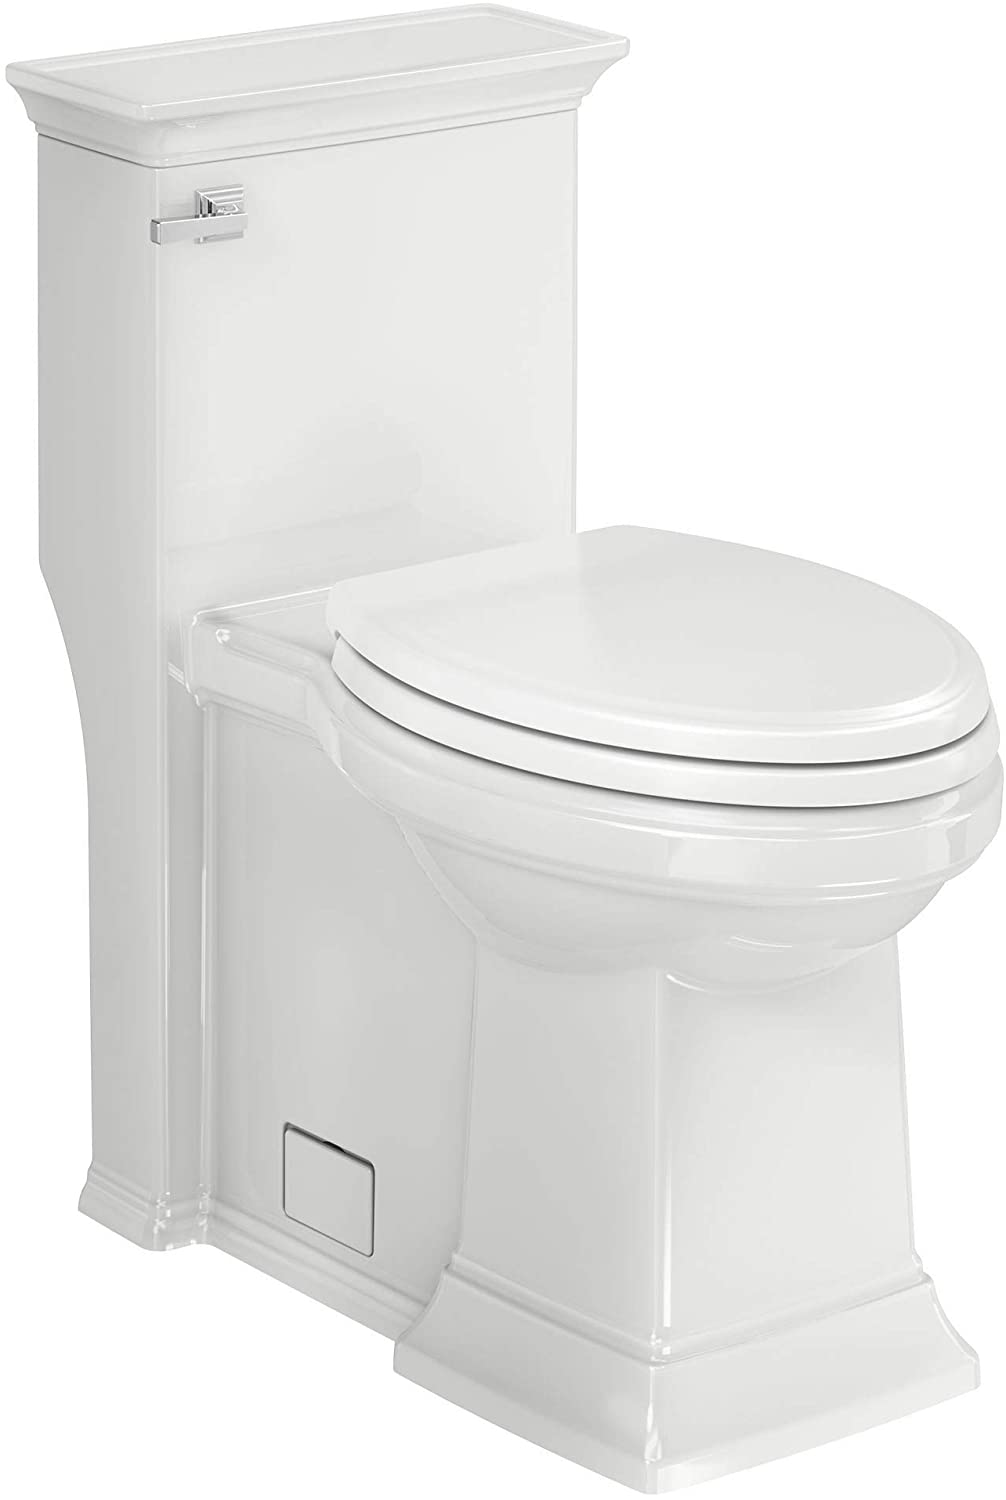 elongated toilet for seniors